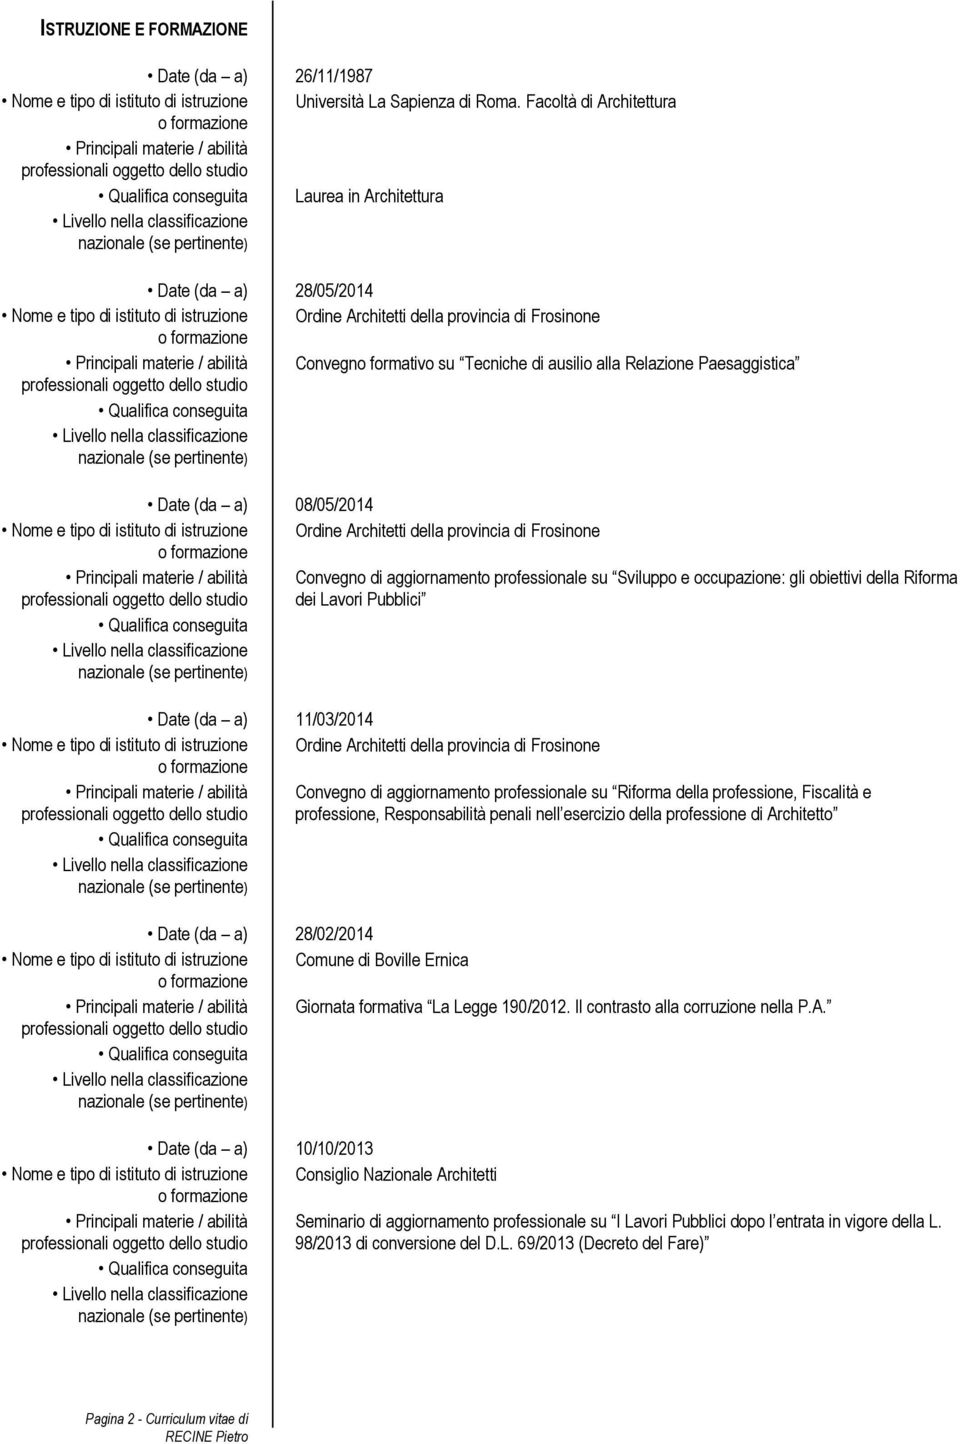 Date (da a) 08/05/2014 Principali materie / abilità Convegno di aggiornamento professionale su Sviluppo e occupazione: gli obiettivi della Riforma dei Lavori Pubblici Date (da a) 11/03/2014